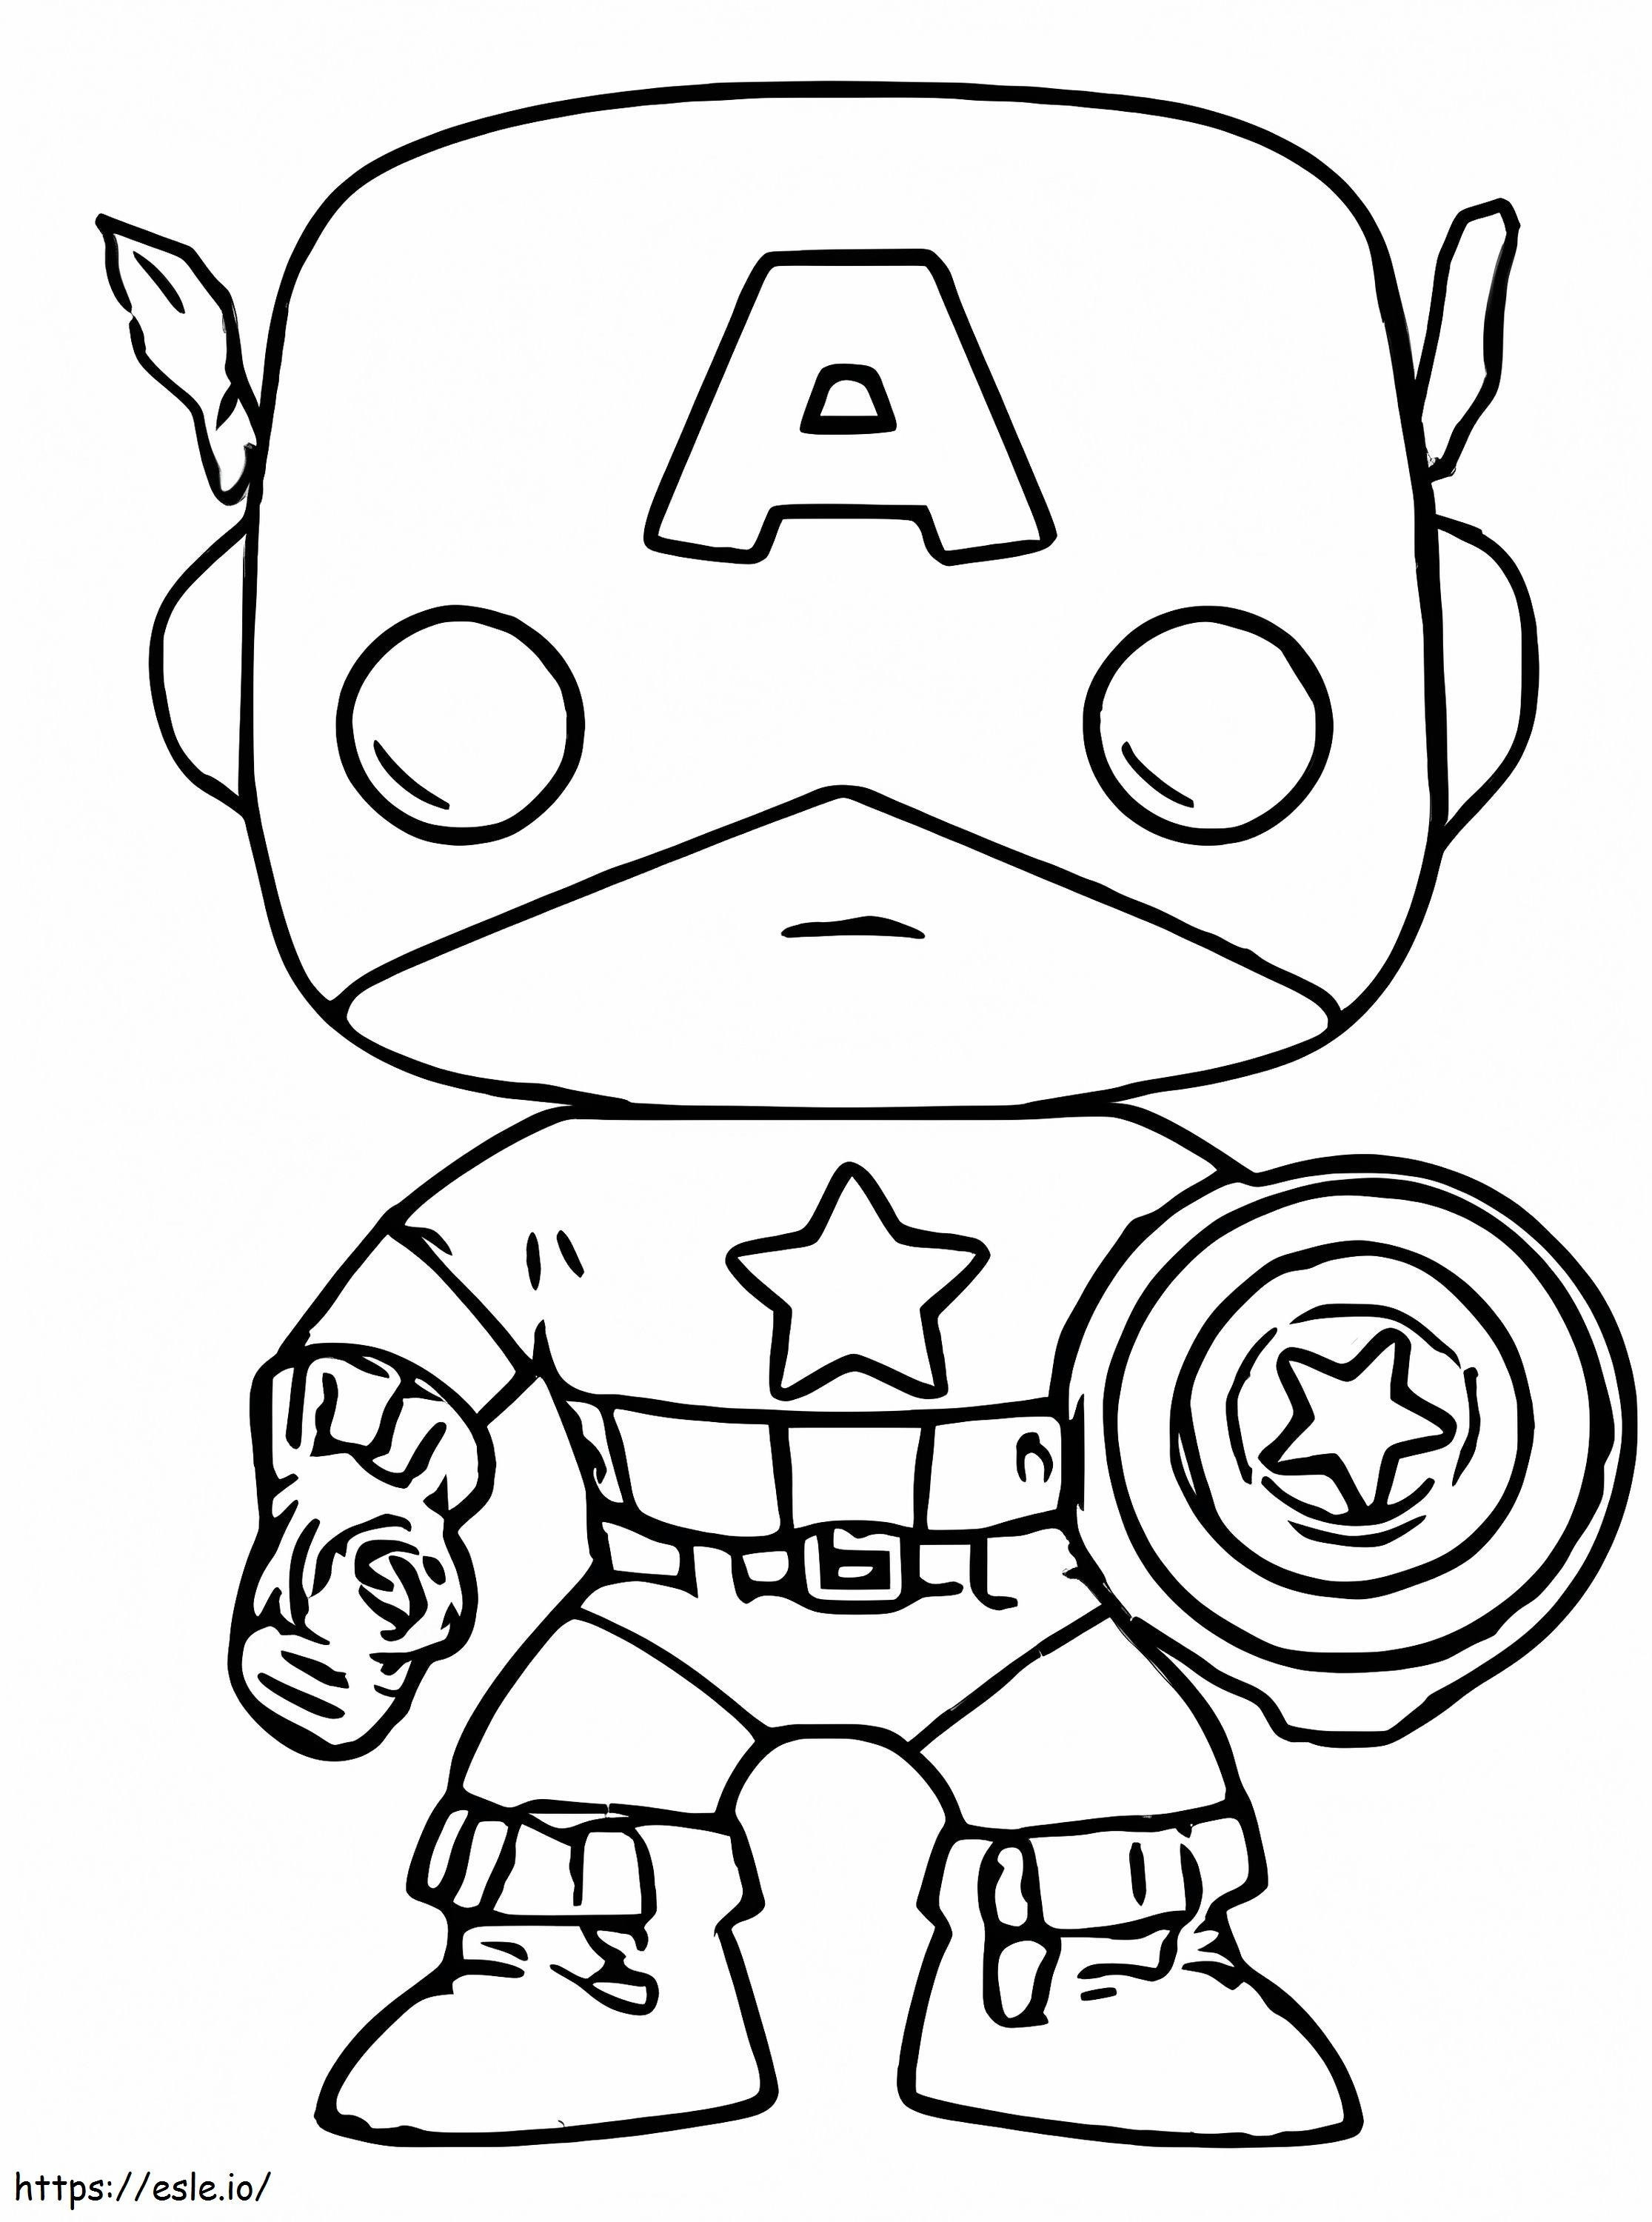 Coloriage Captain America Funko Pops à imprimer dessin